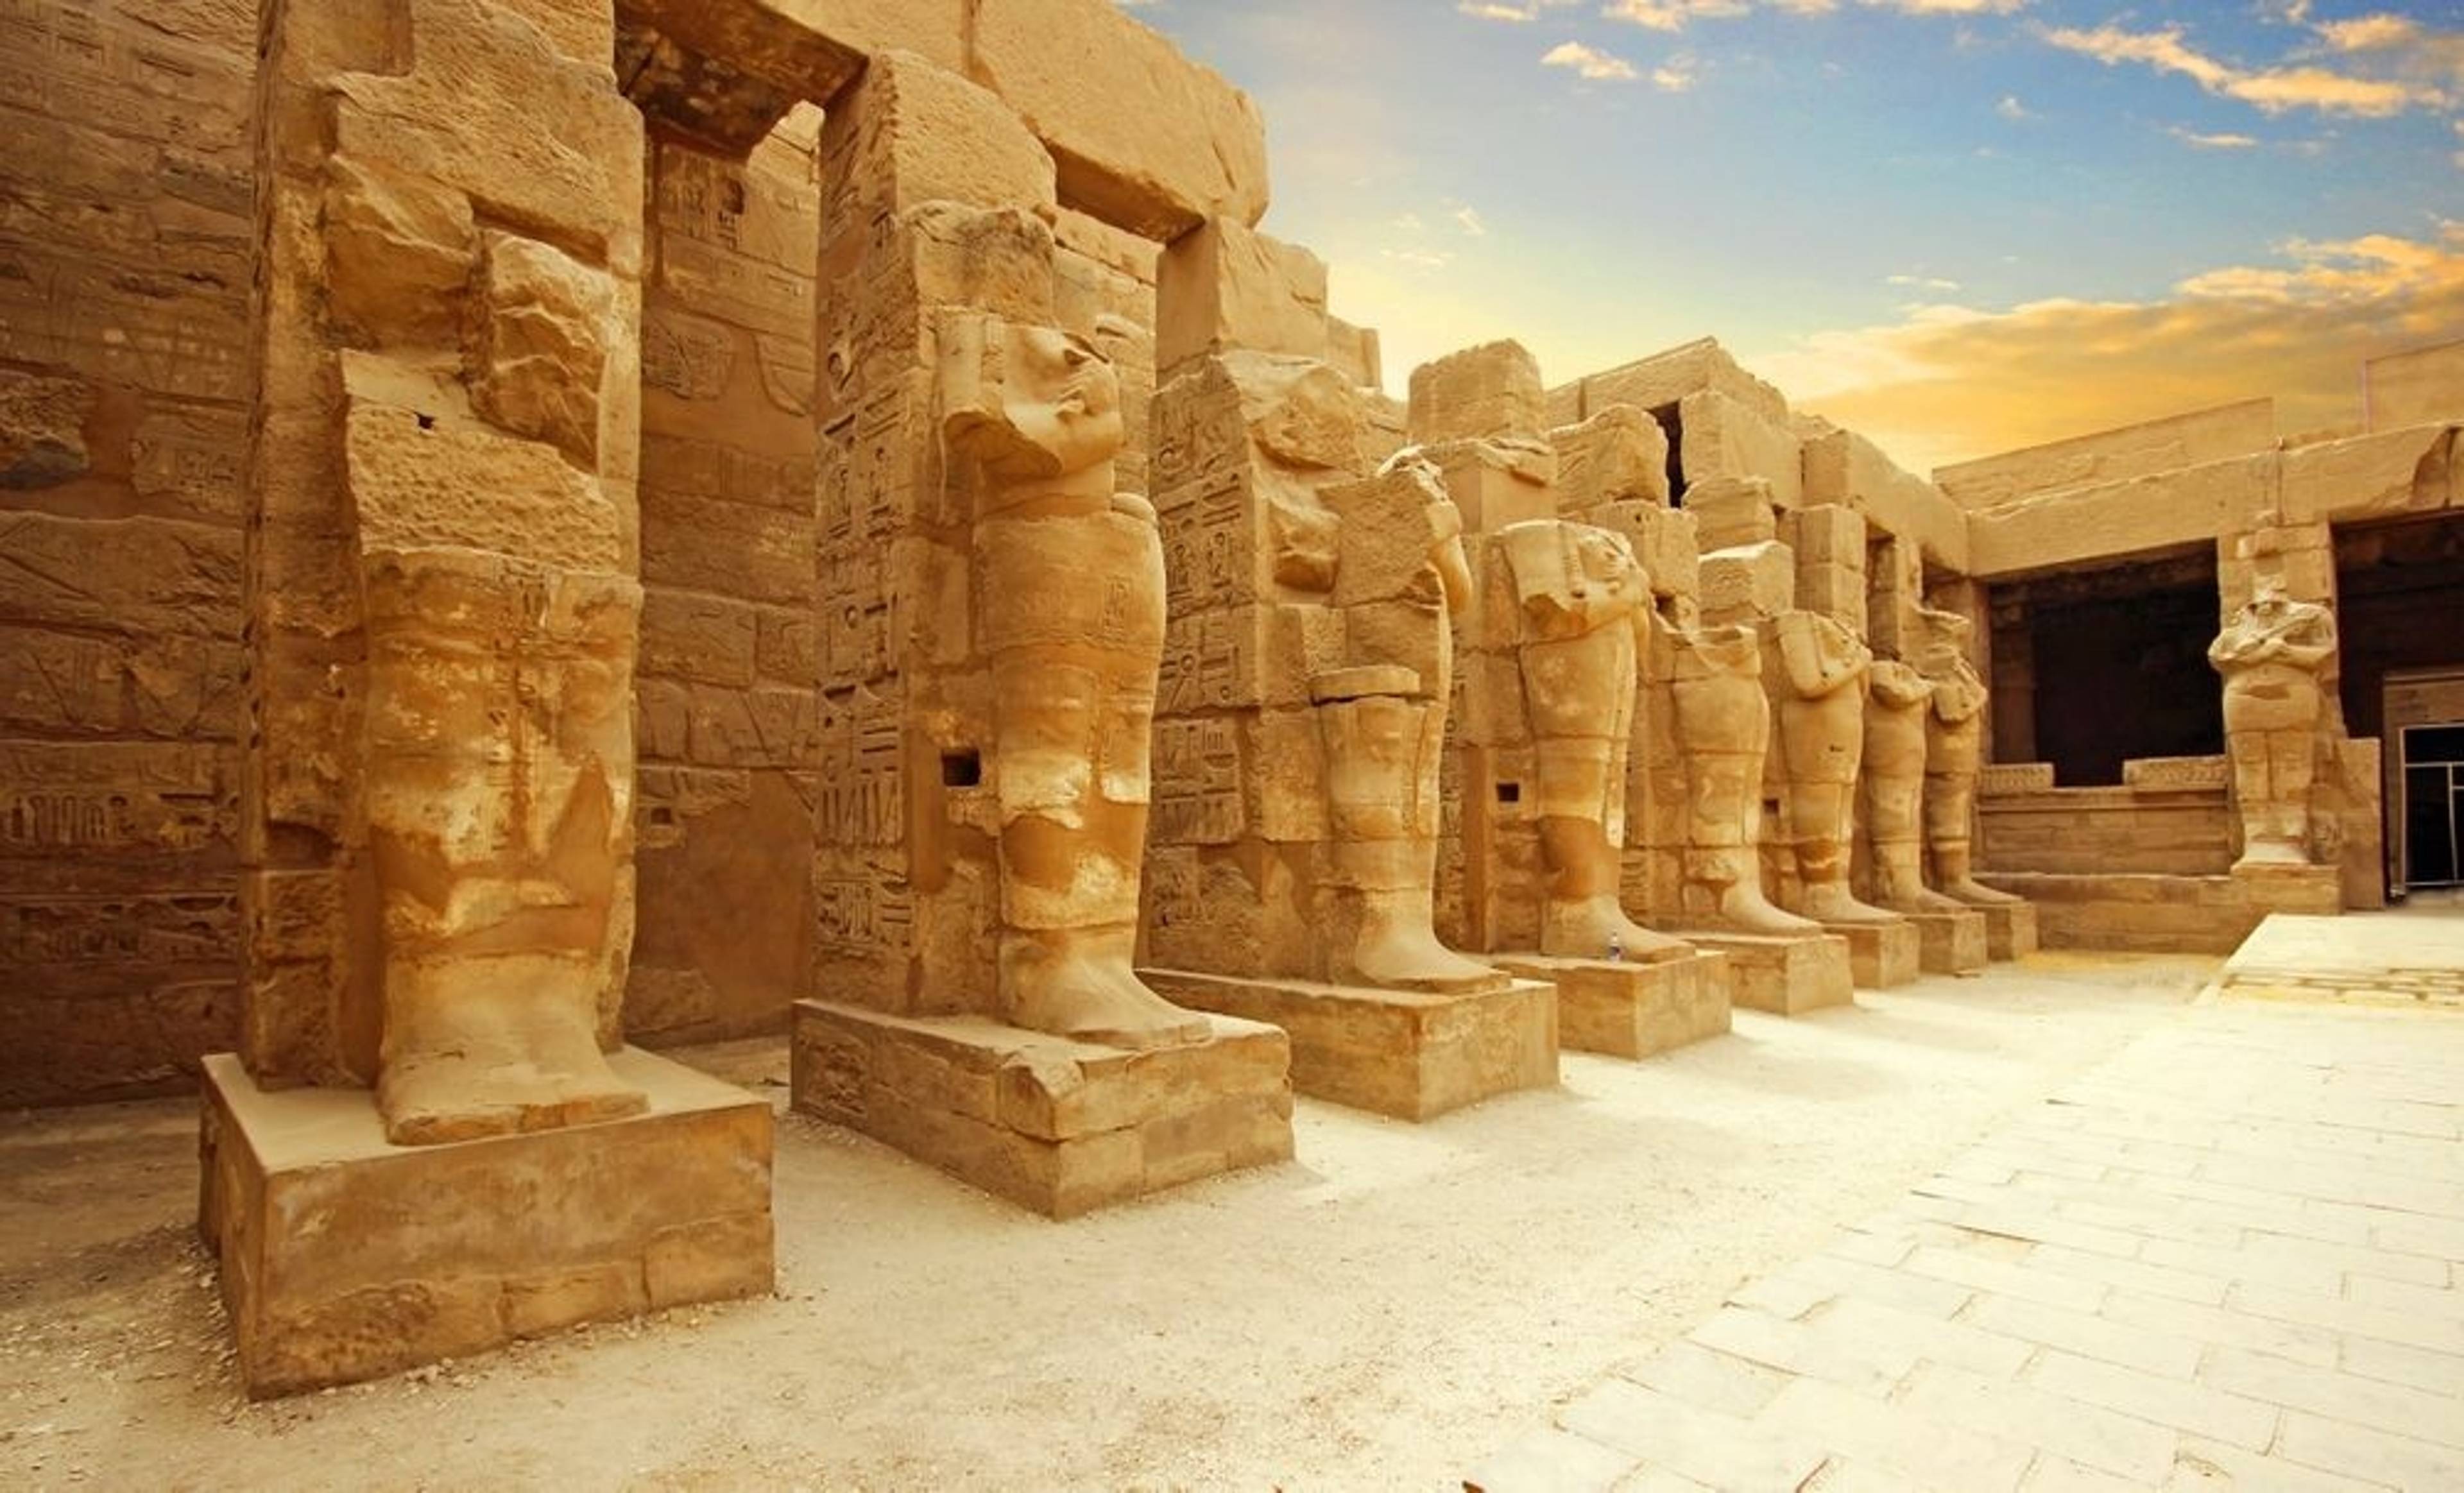 Antico complesso museale egizio